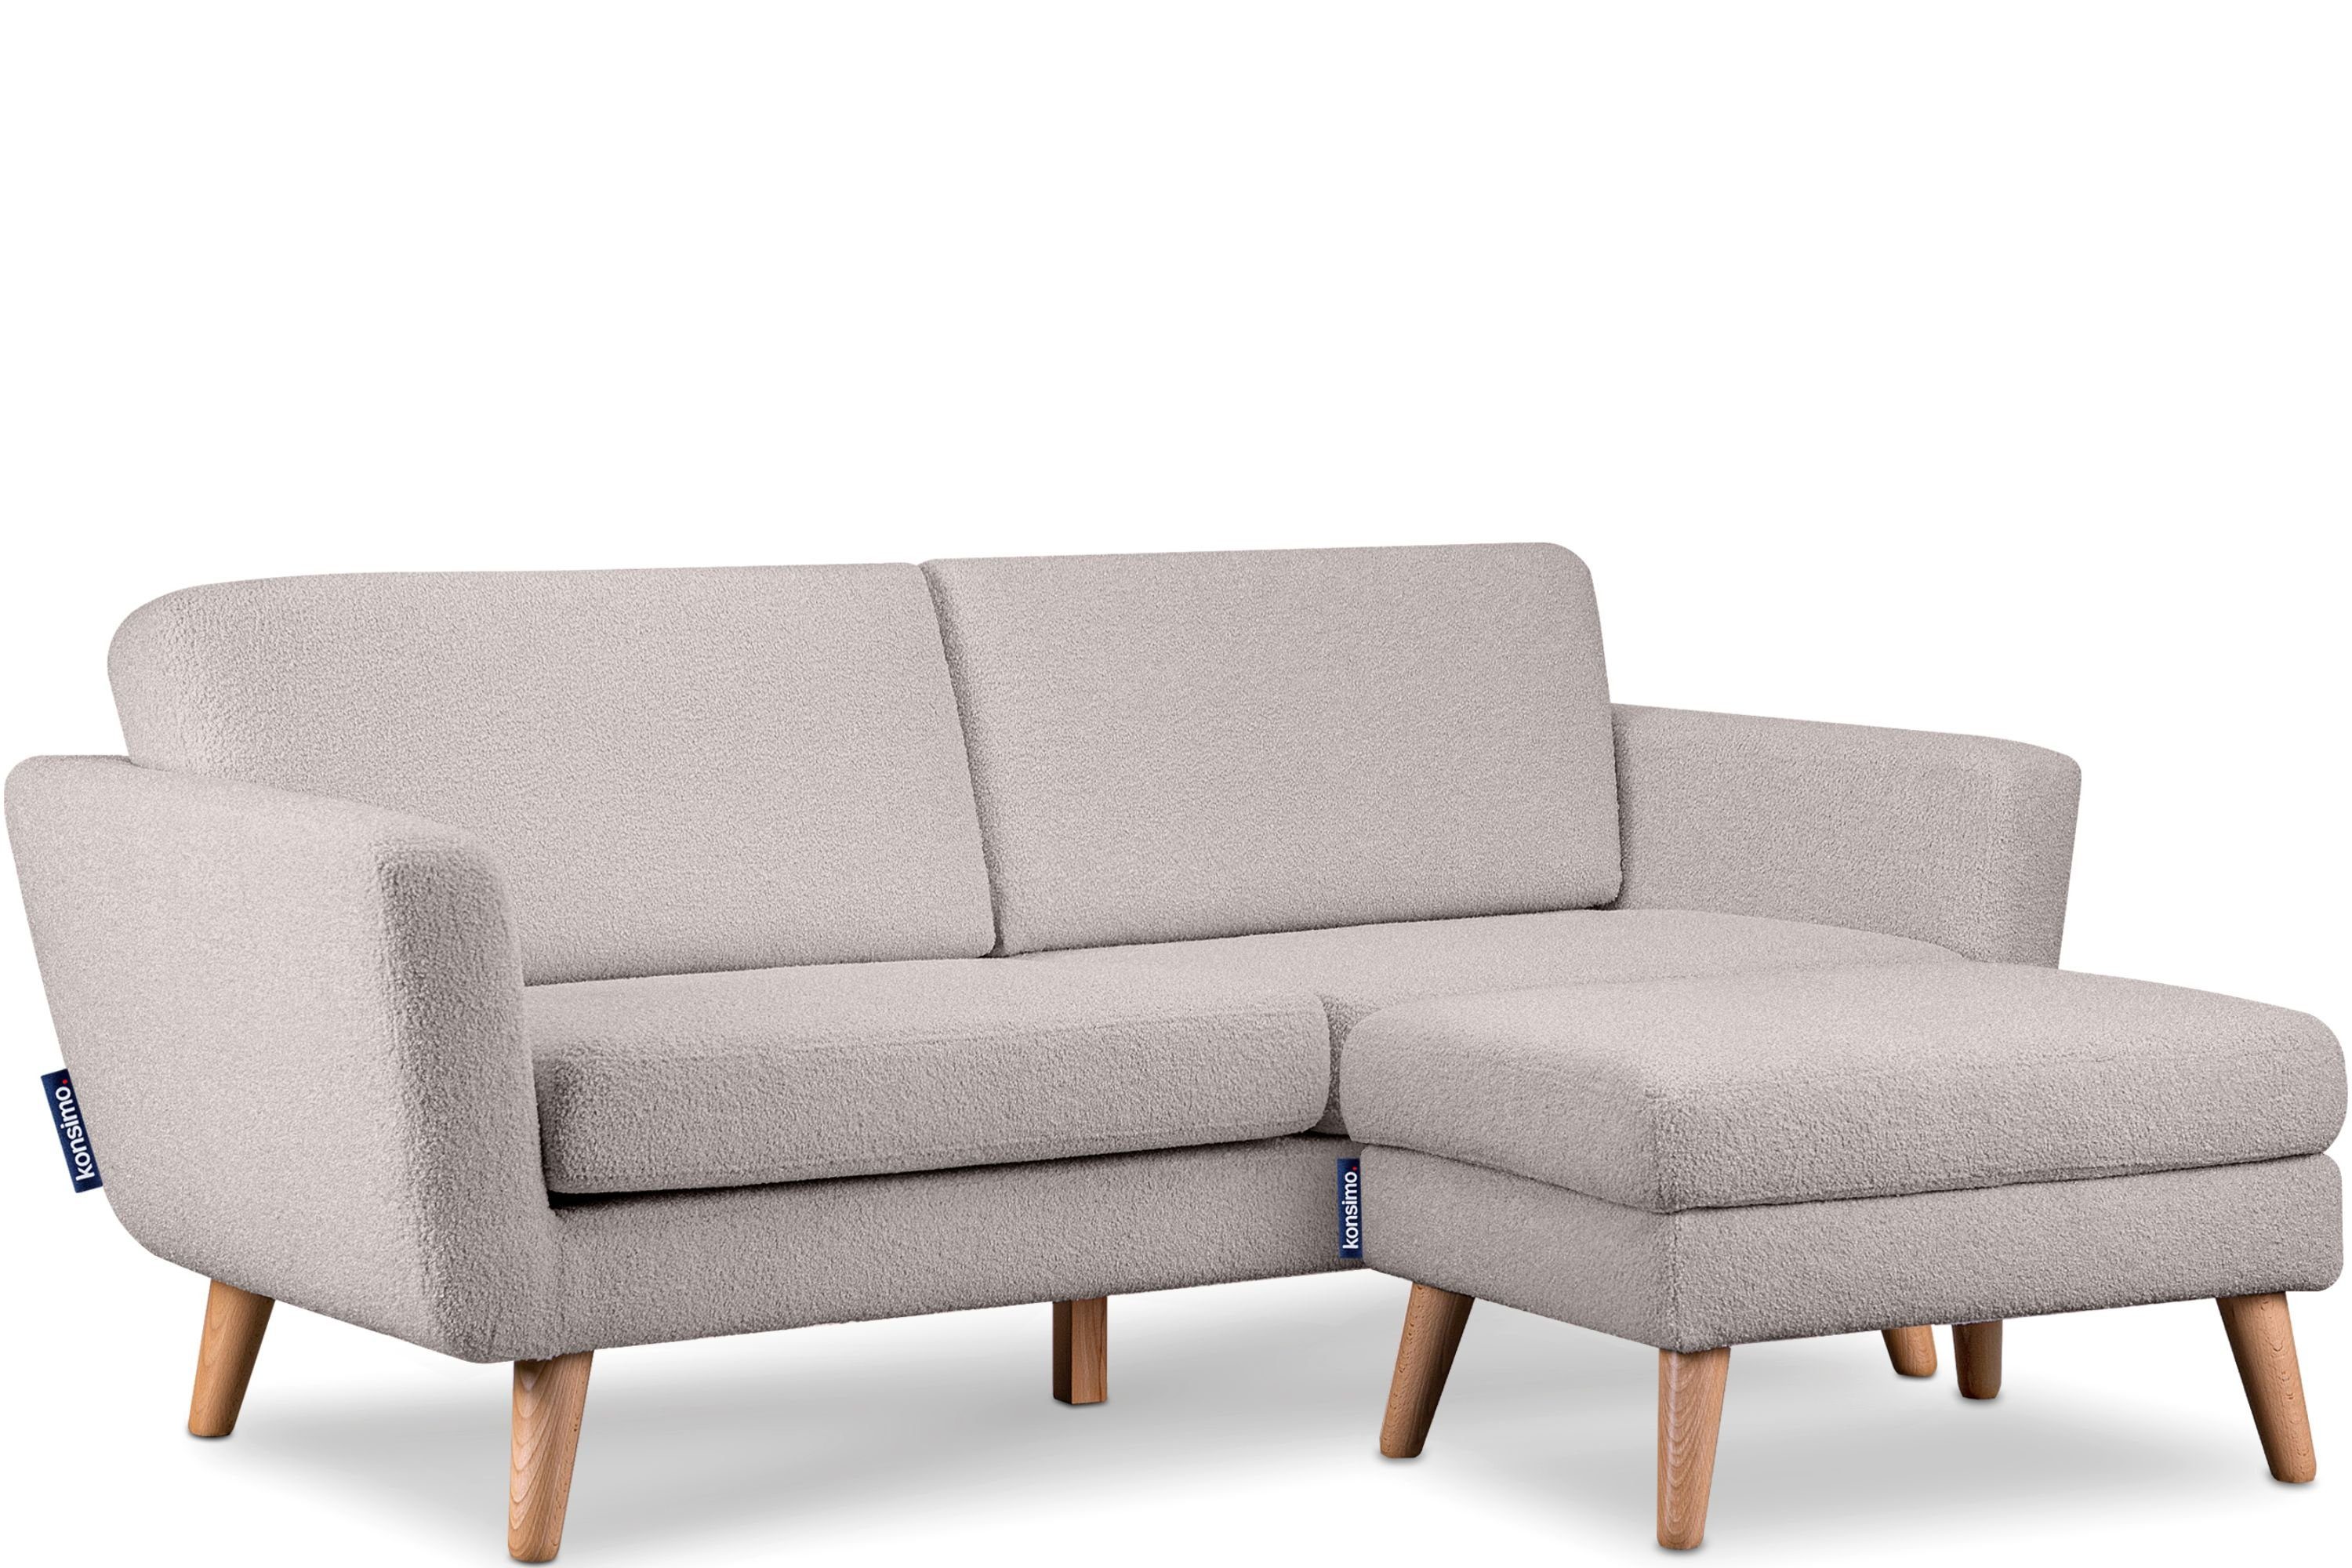 TAGIO Sofa Gestell Konsimo Armlehnen, Made 3-Sitzer | Scandi-Stil, hellgrau mit in hellgrau Personen, 3 Massivholz Europe, aus